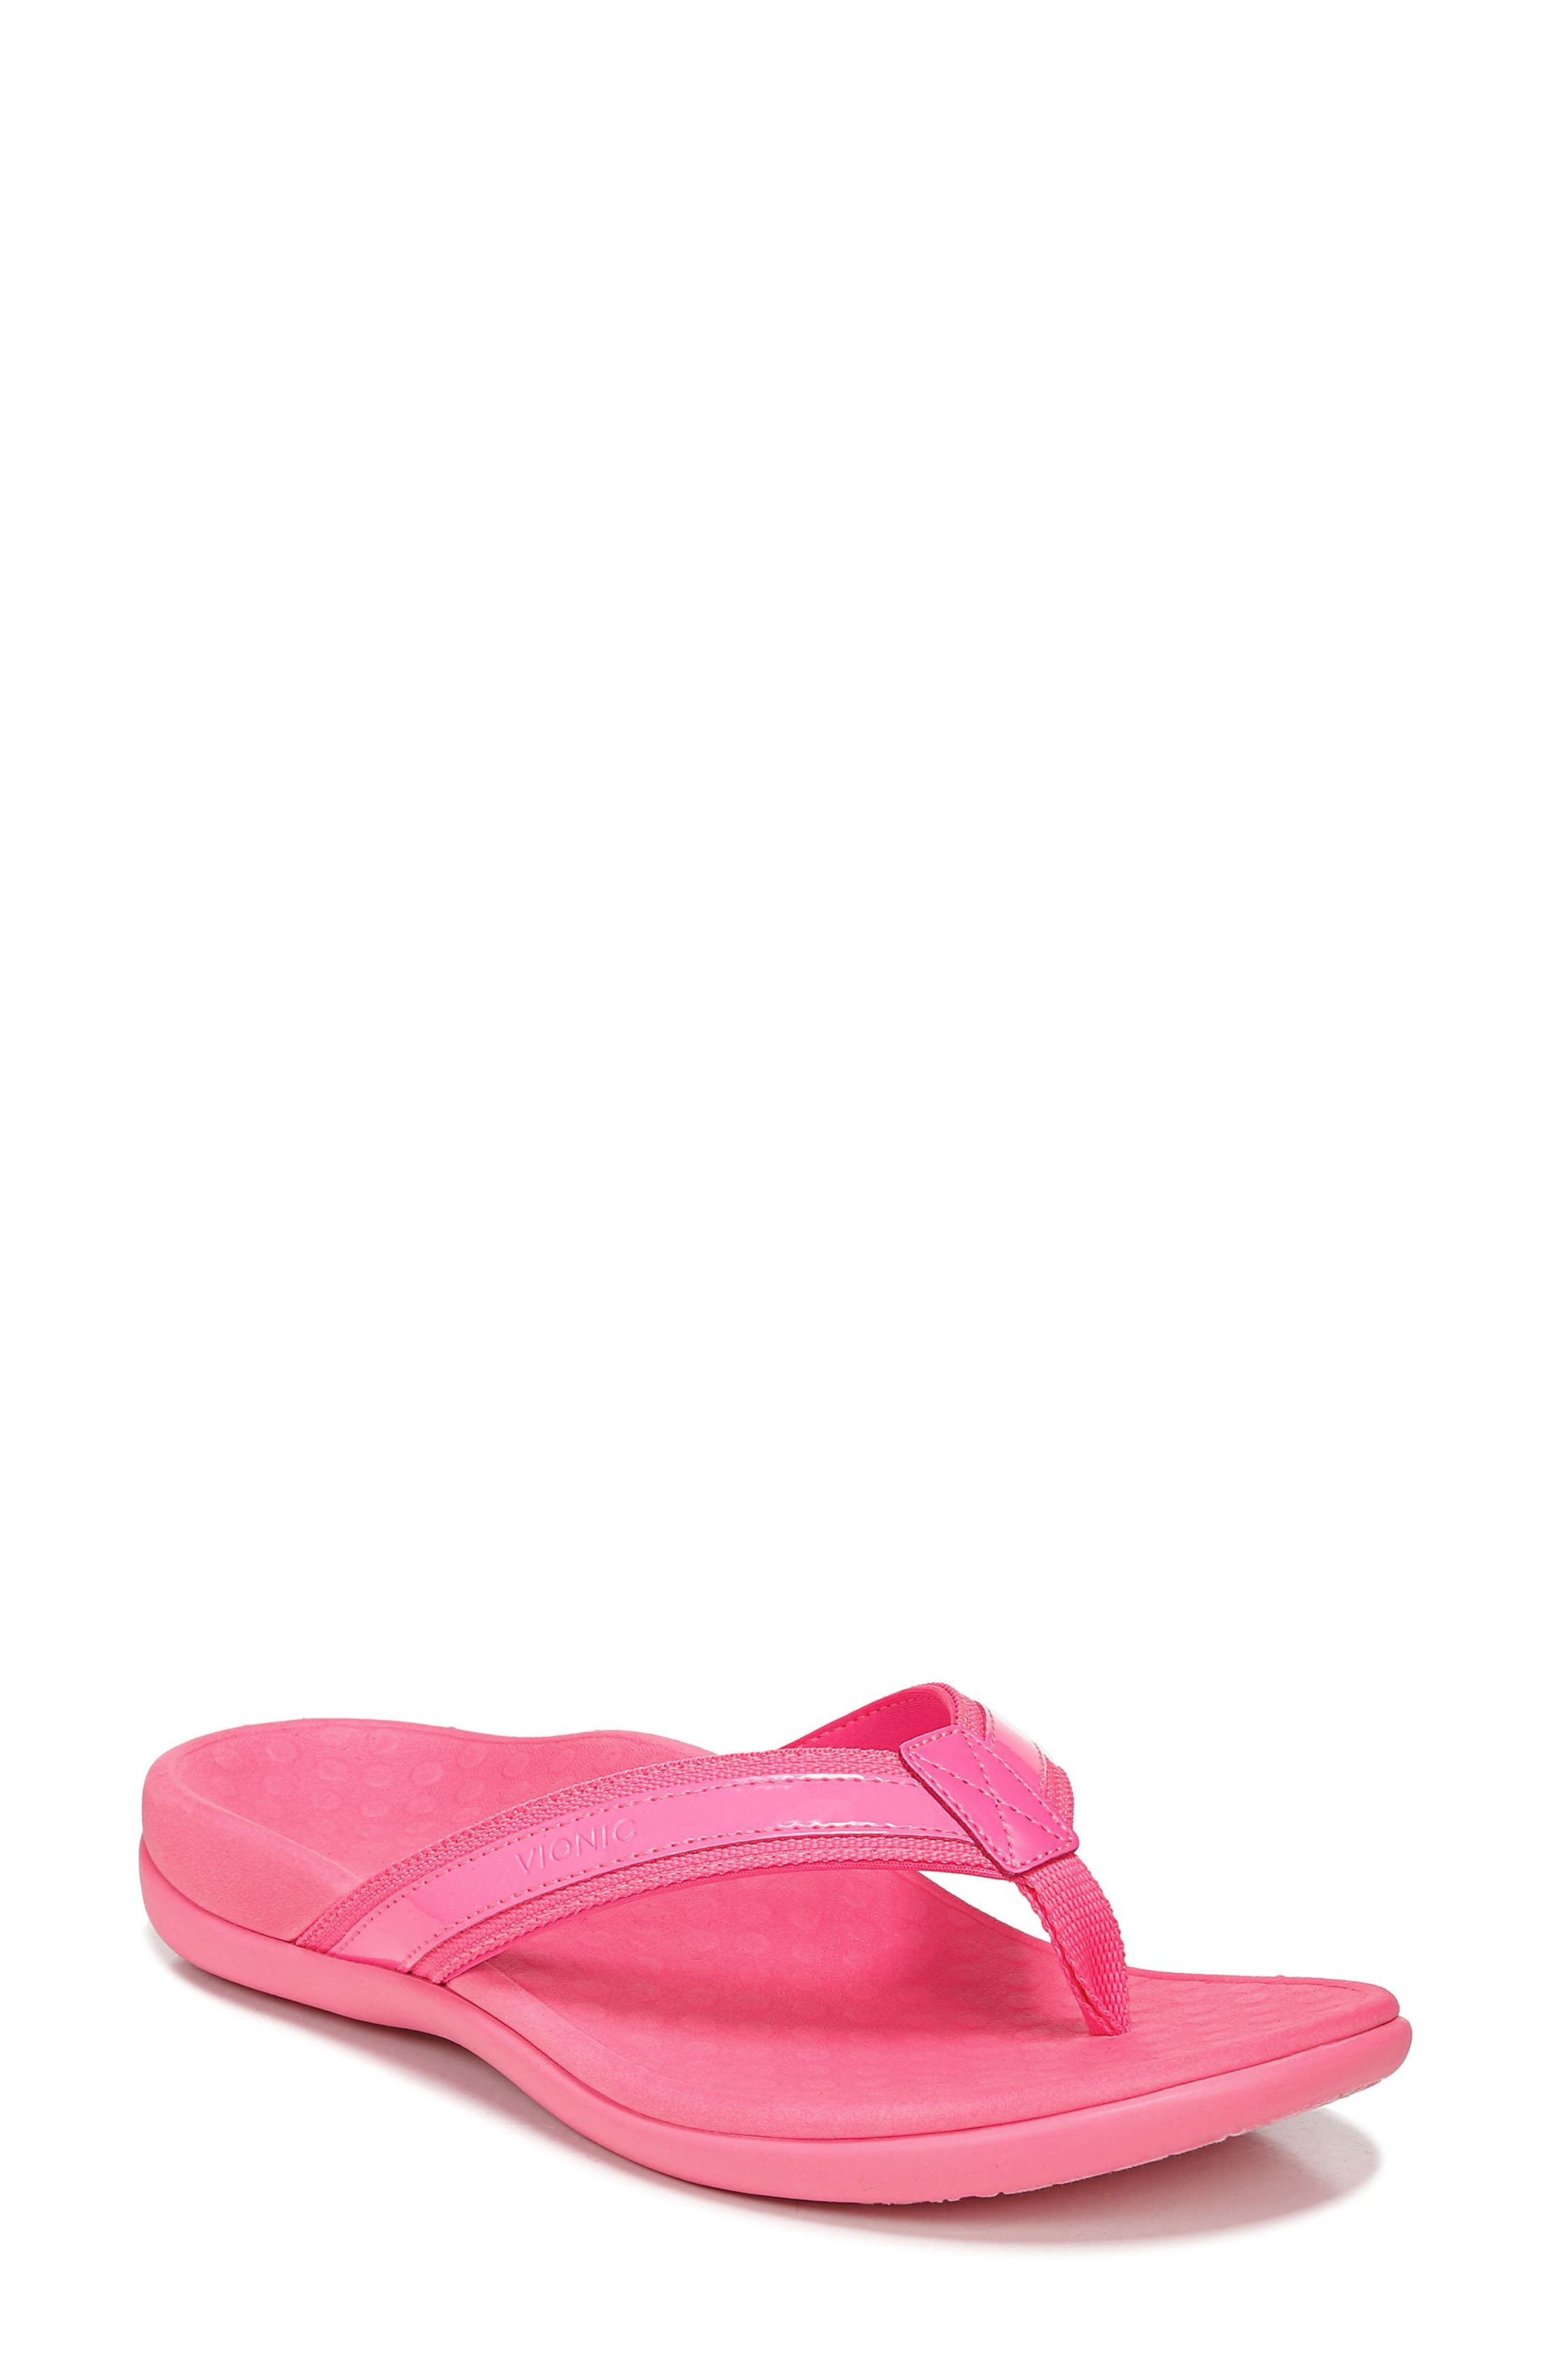 AKDJDS Pink Easter Eggs Slide Sandal Slippers for Men